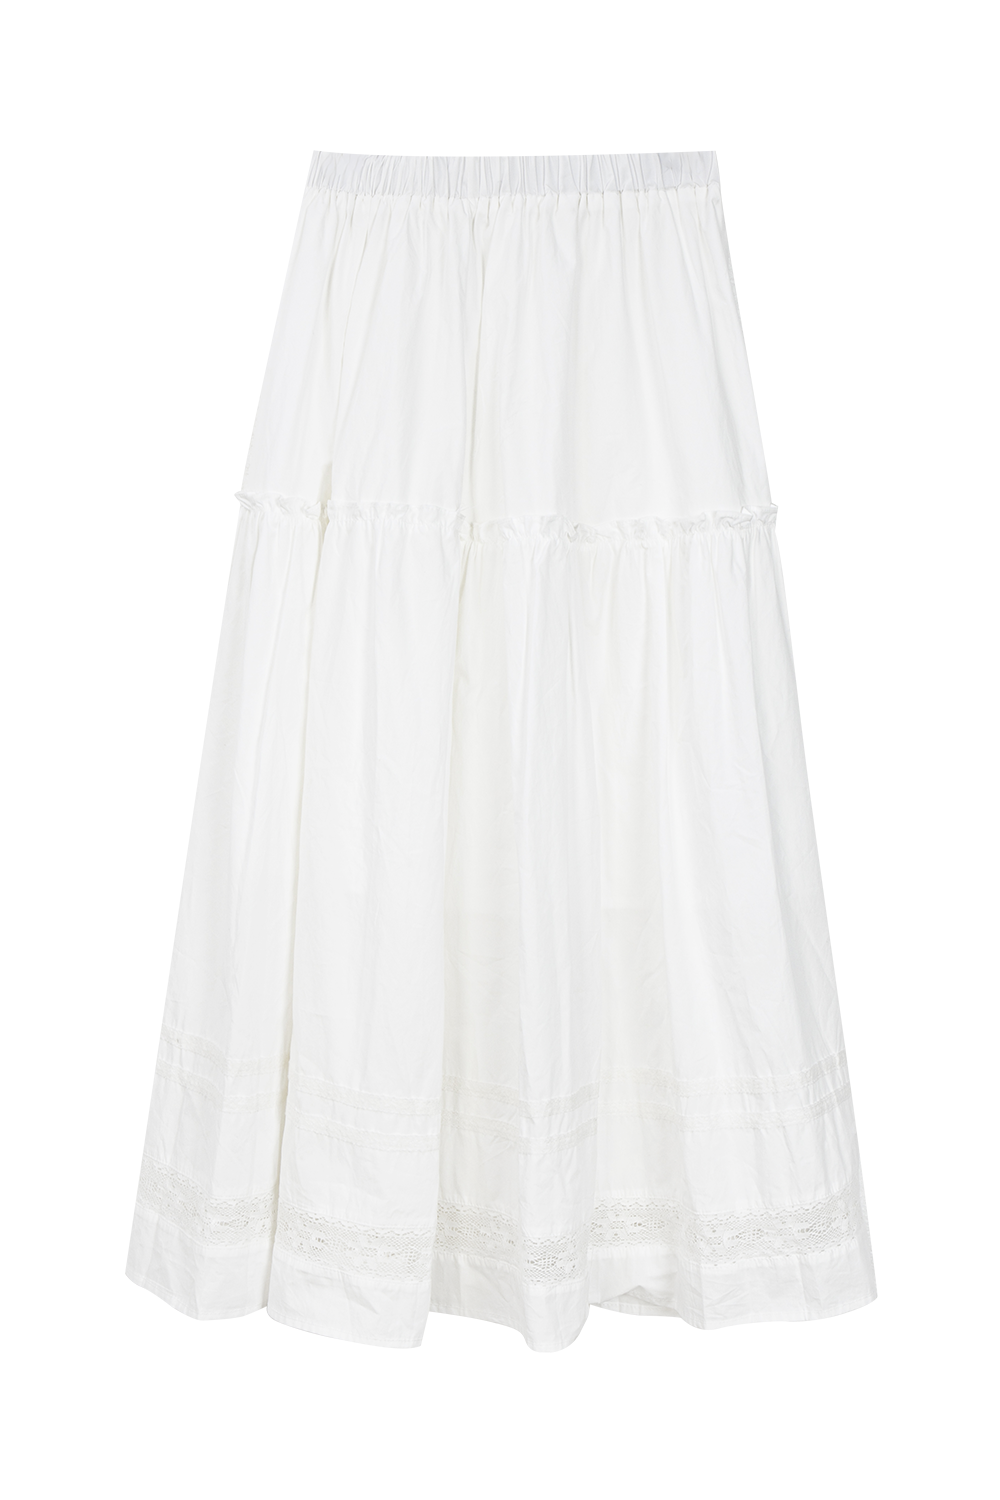 Skirt Midi Cotton White Lace - Pakaian Kasual Musim Panas